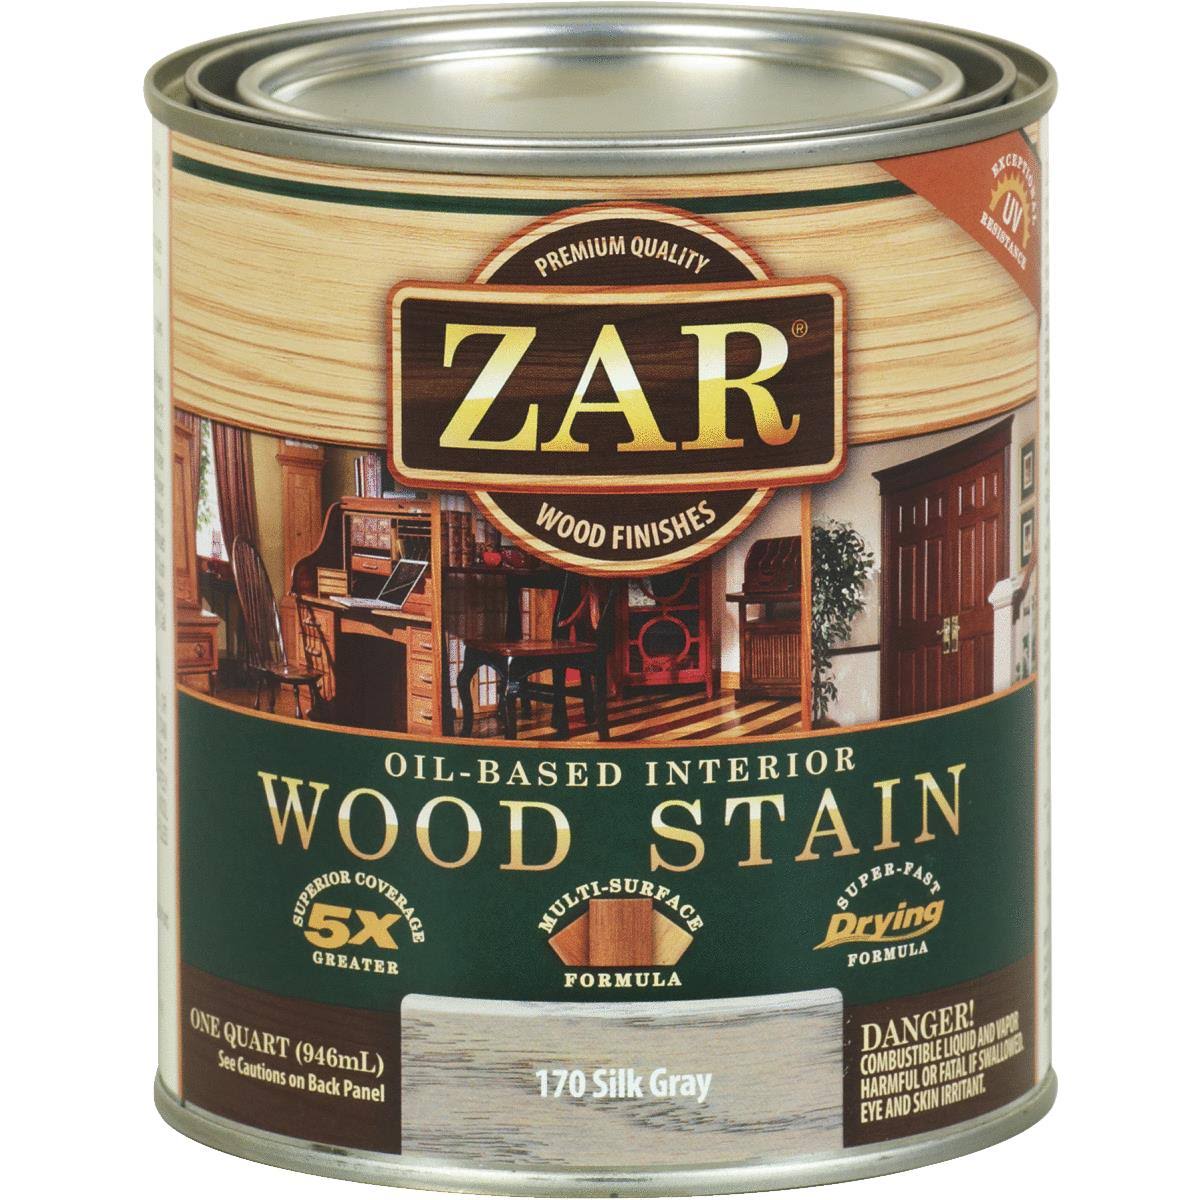 Zar Oil Based Interior Wood Stain - Silk Gray, 1 Quart